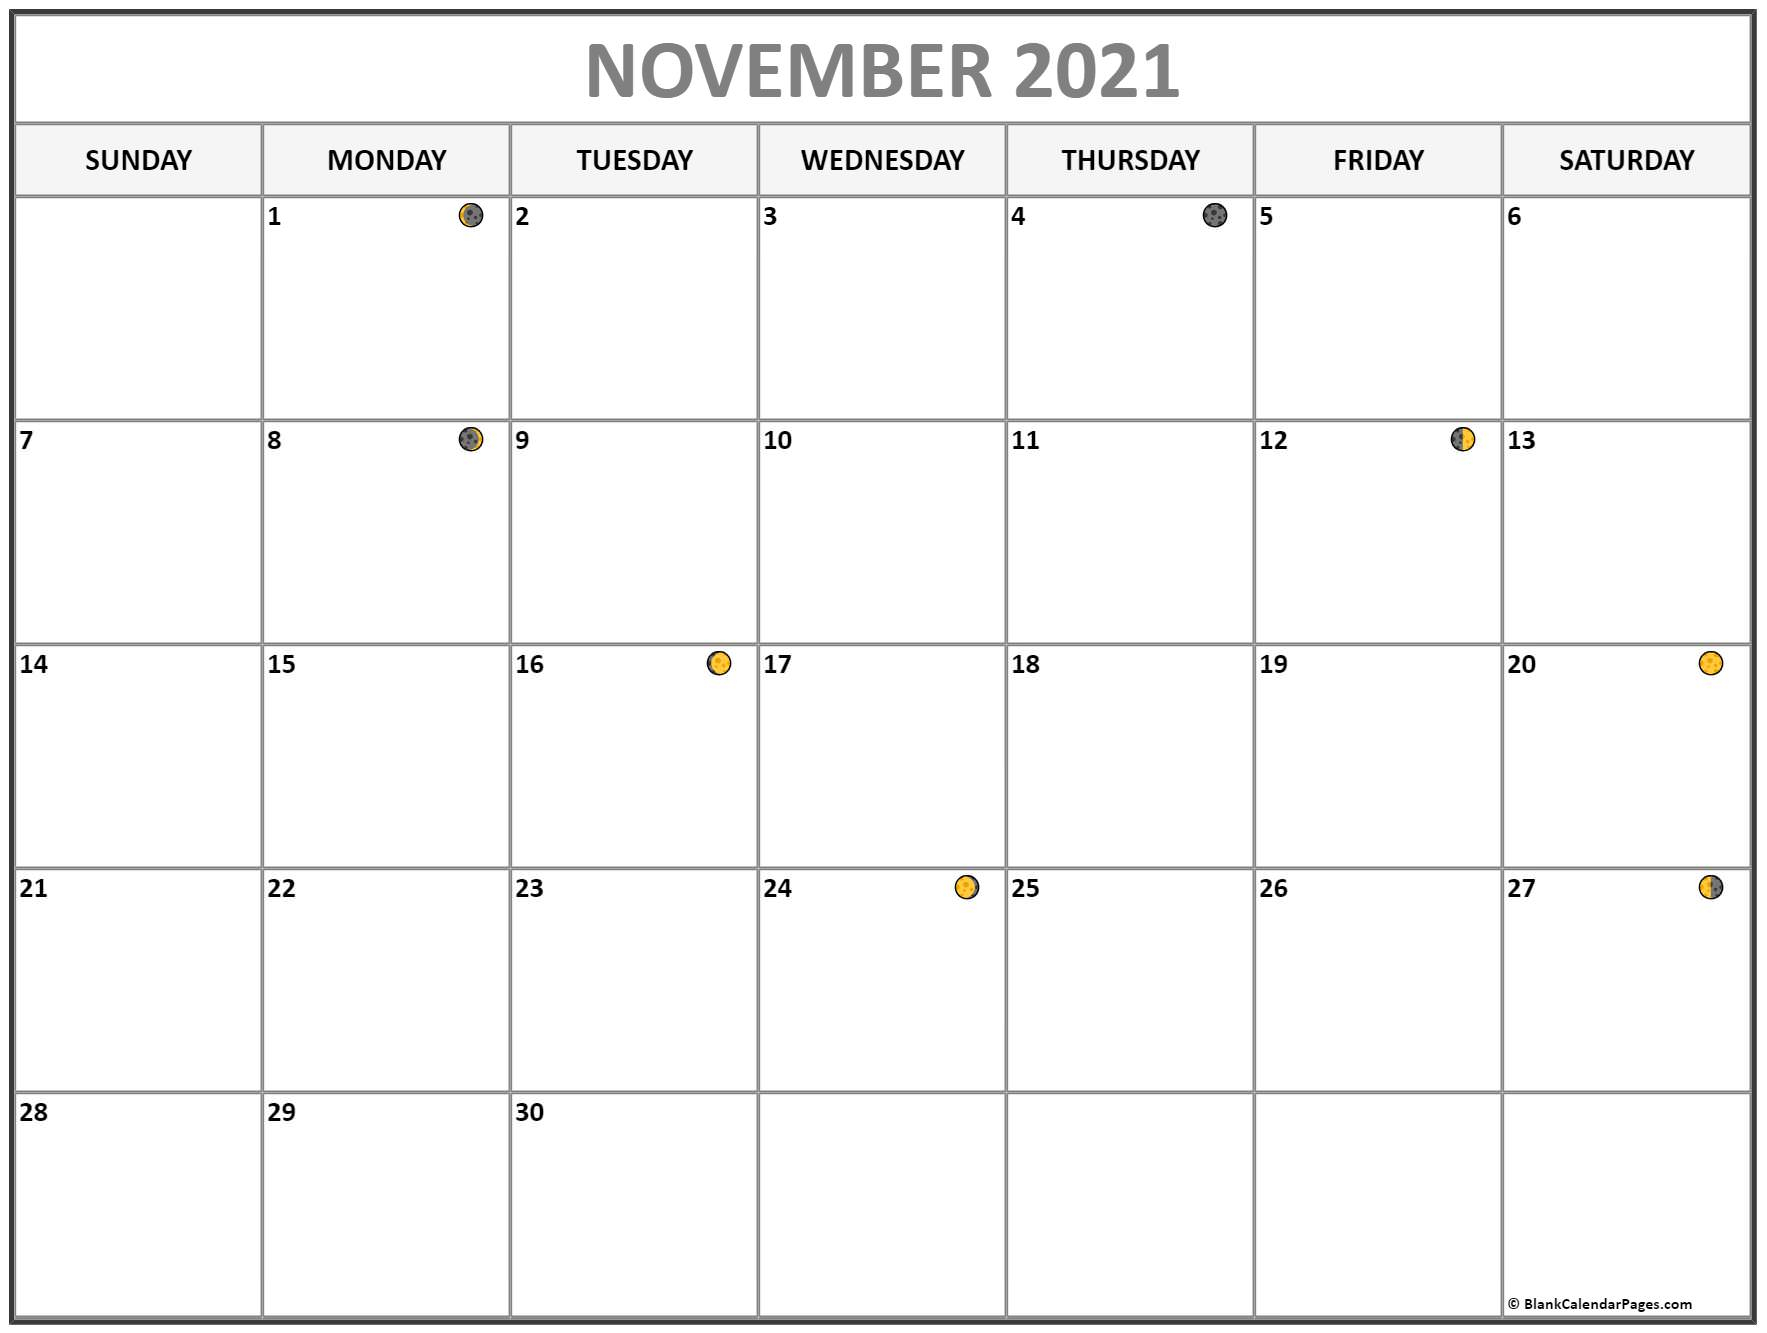 November 2021 Lunar Calendar Moon Phase Calendar